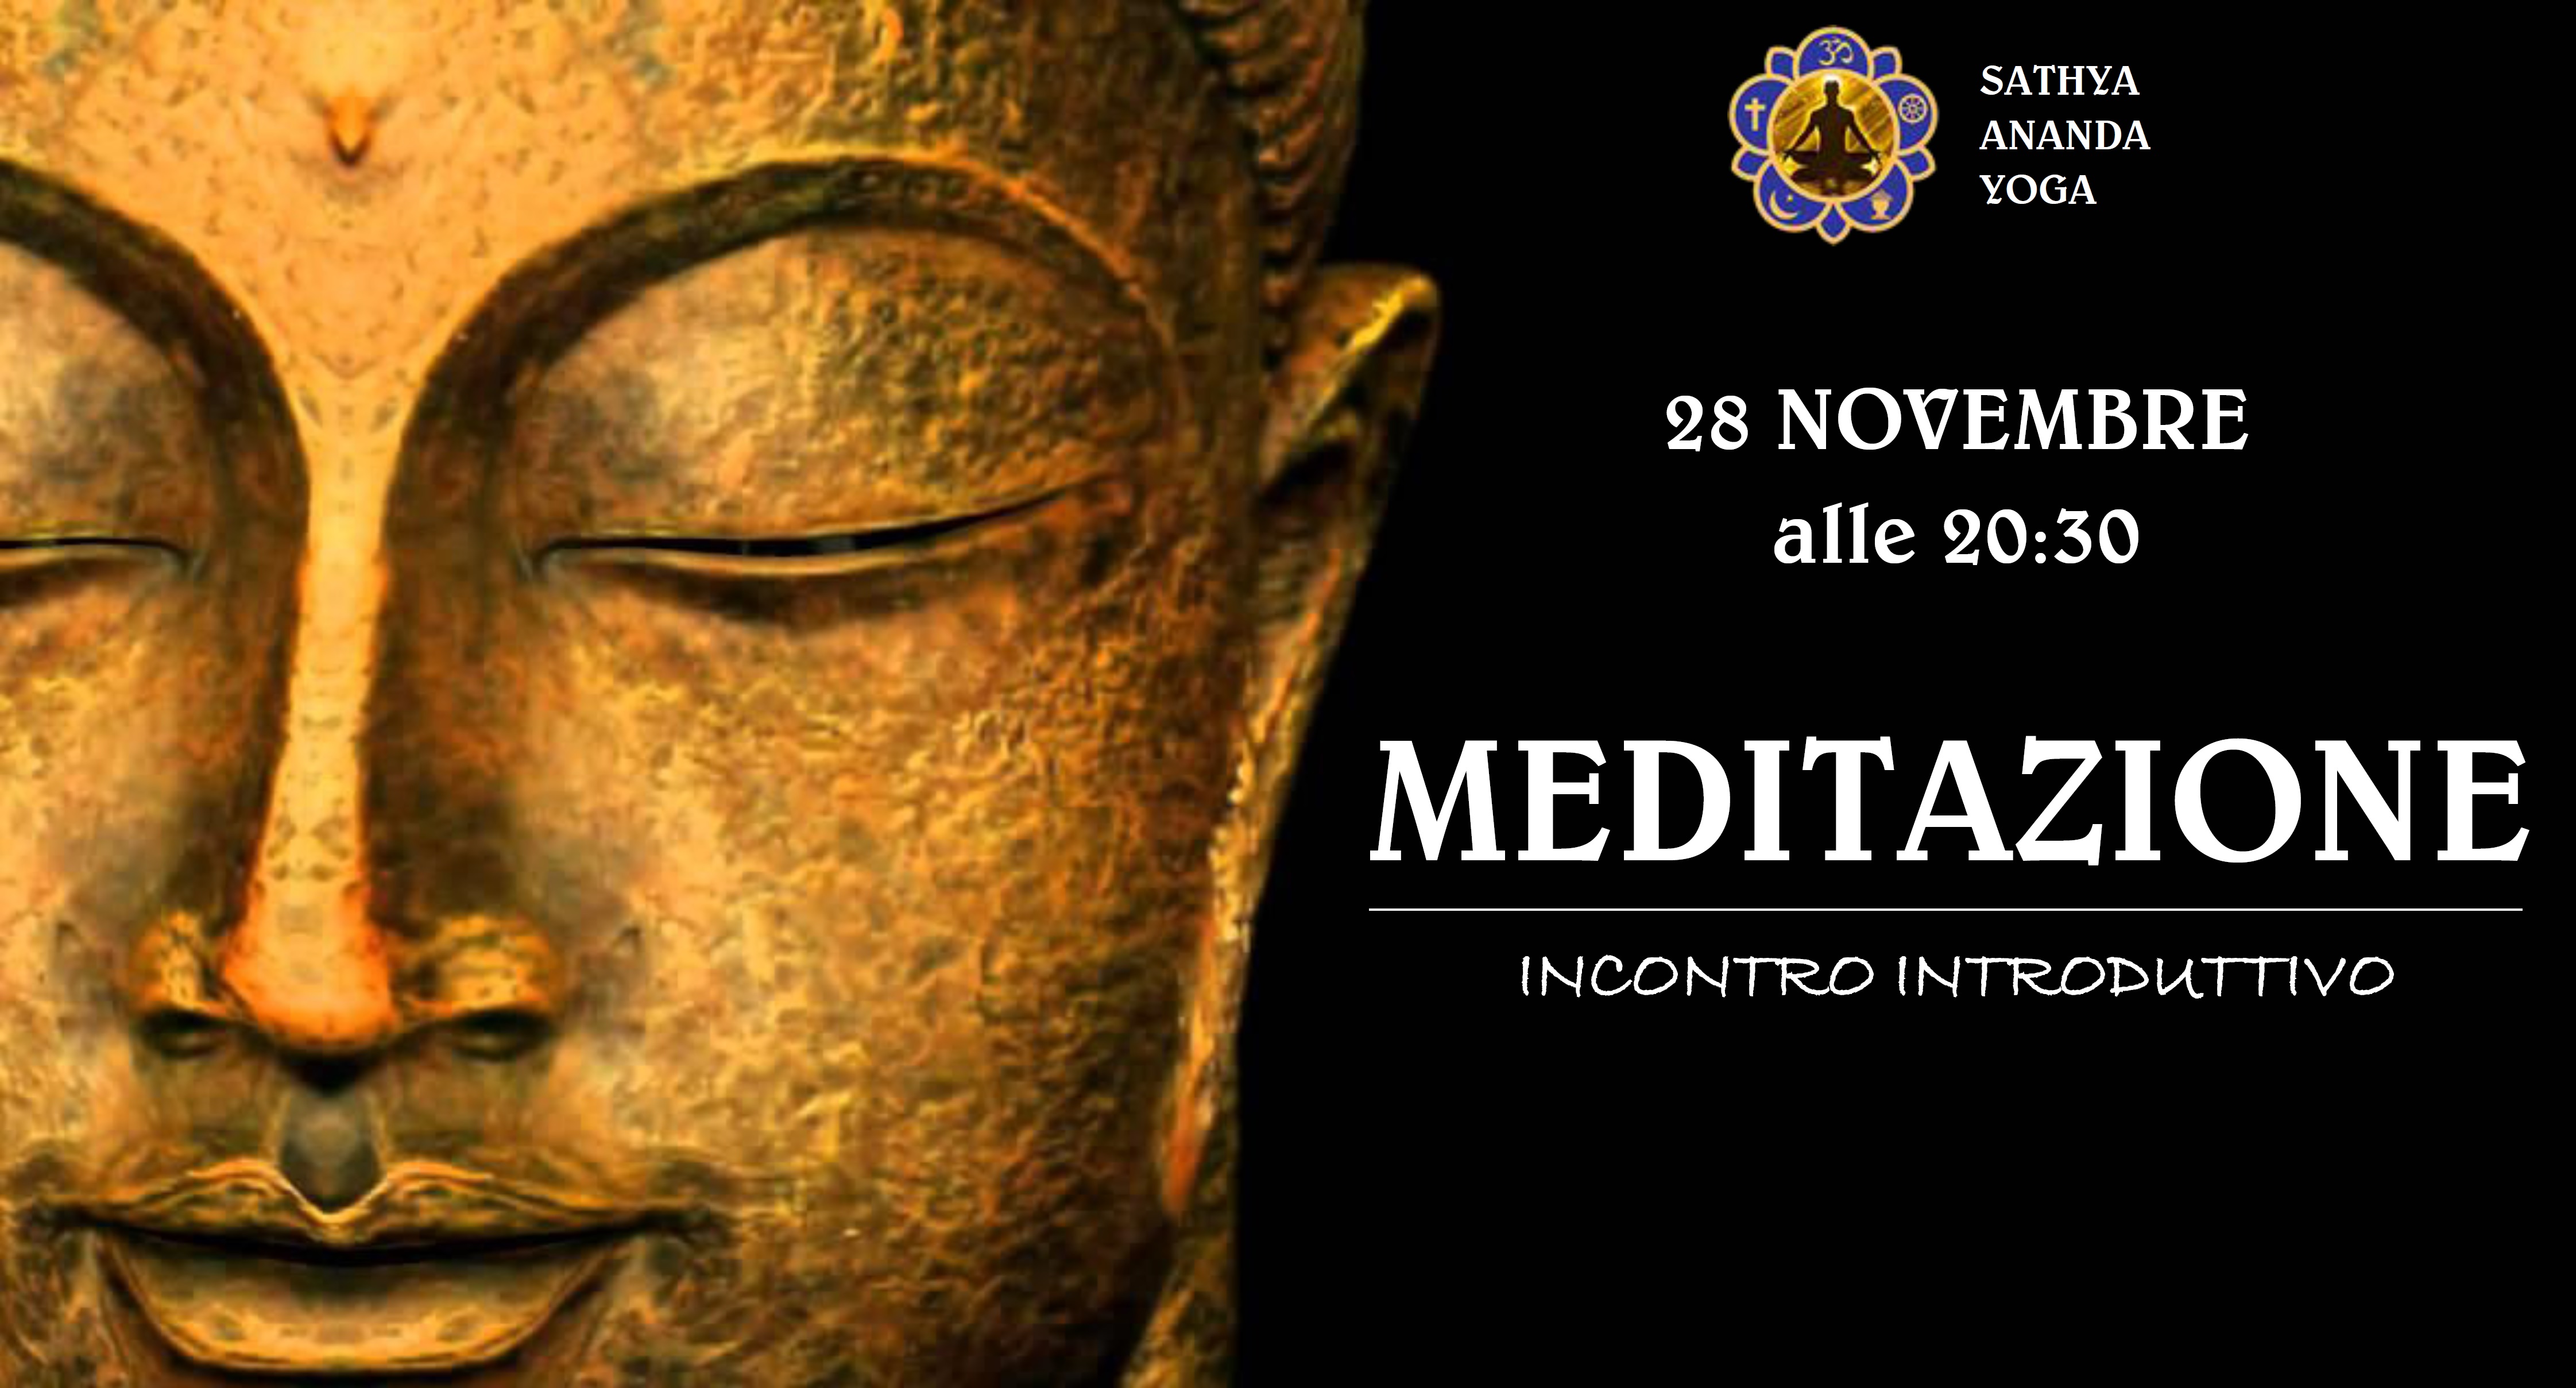 MEDITAZIONE - Incontro introduttivo al corso di meditazione